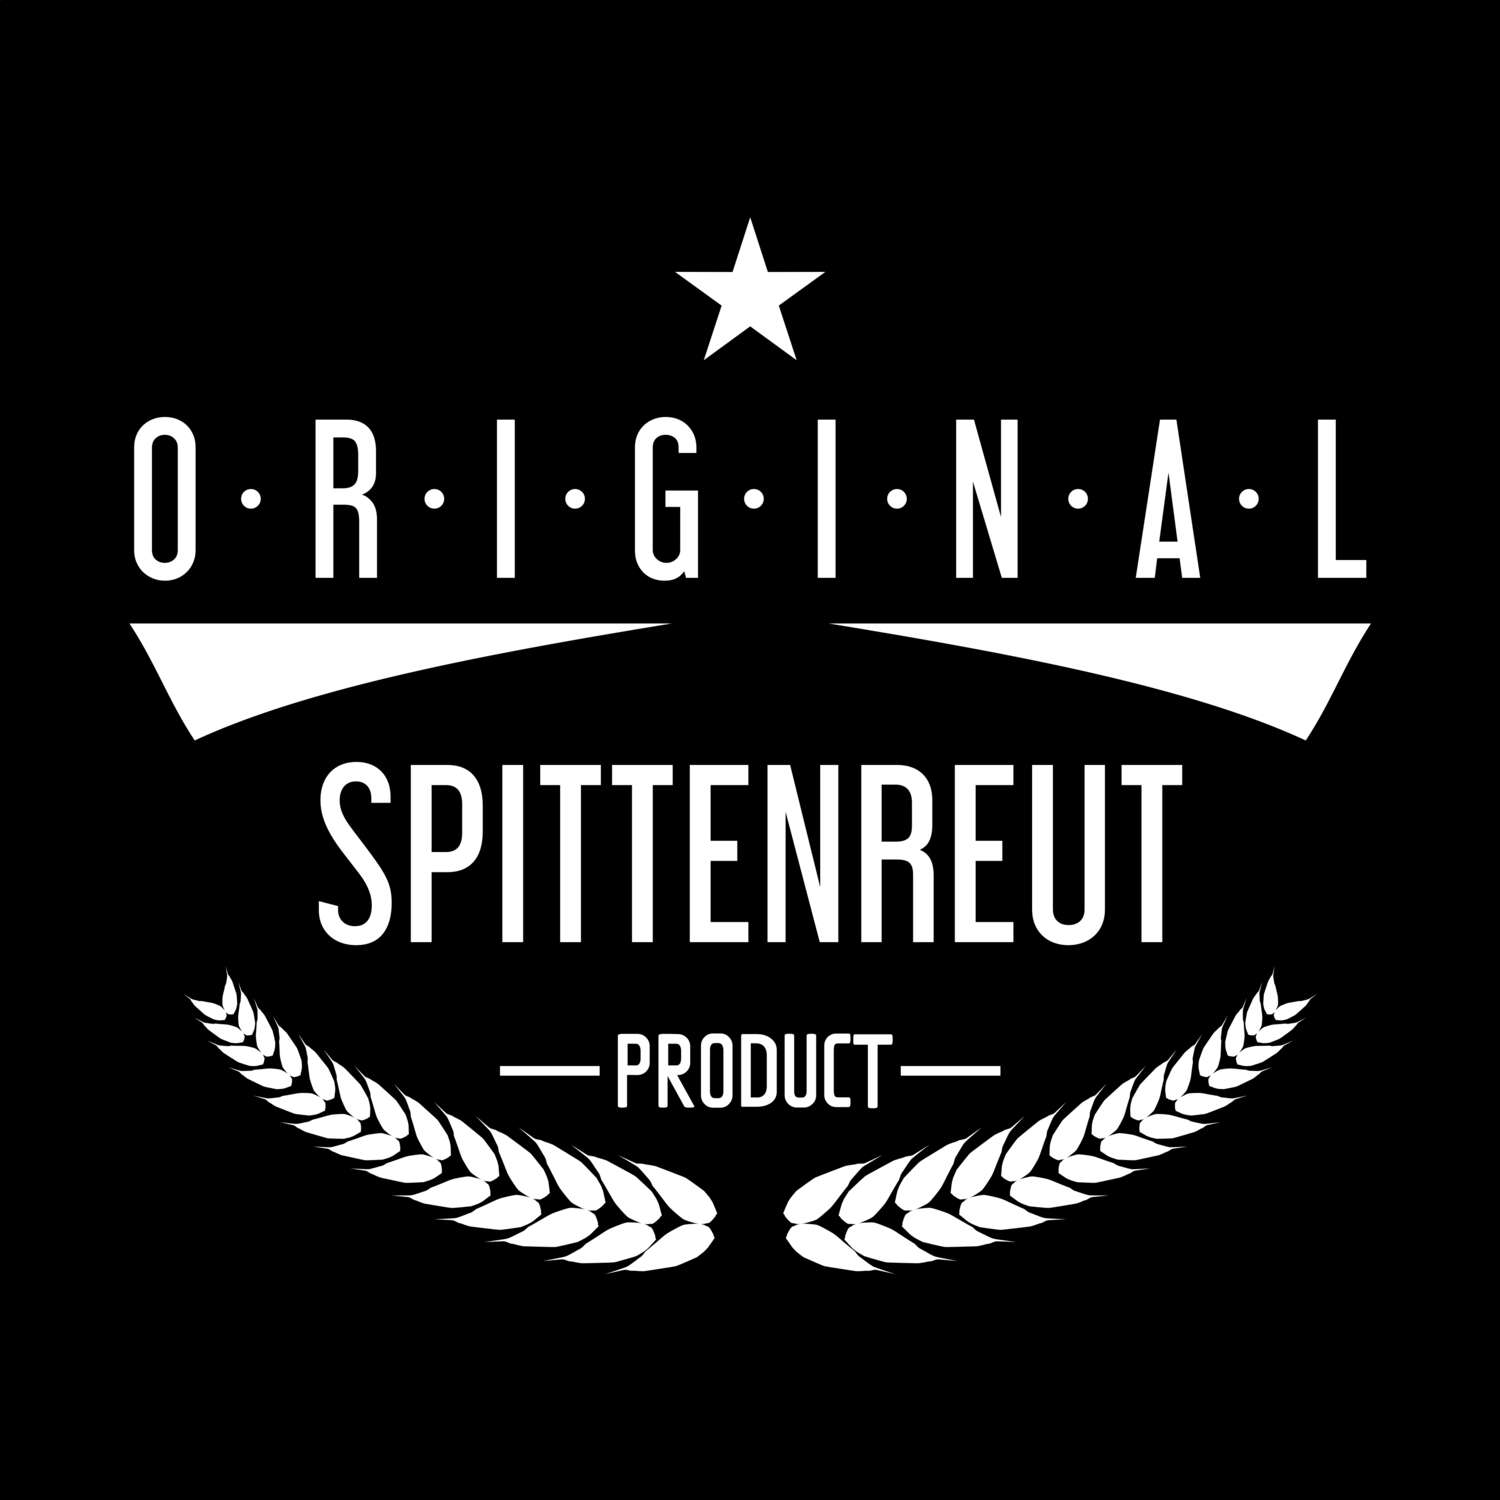 Spittenreut T-Shirt »Original Product«